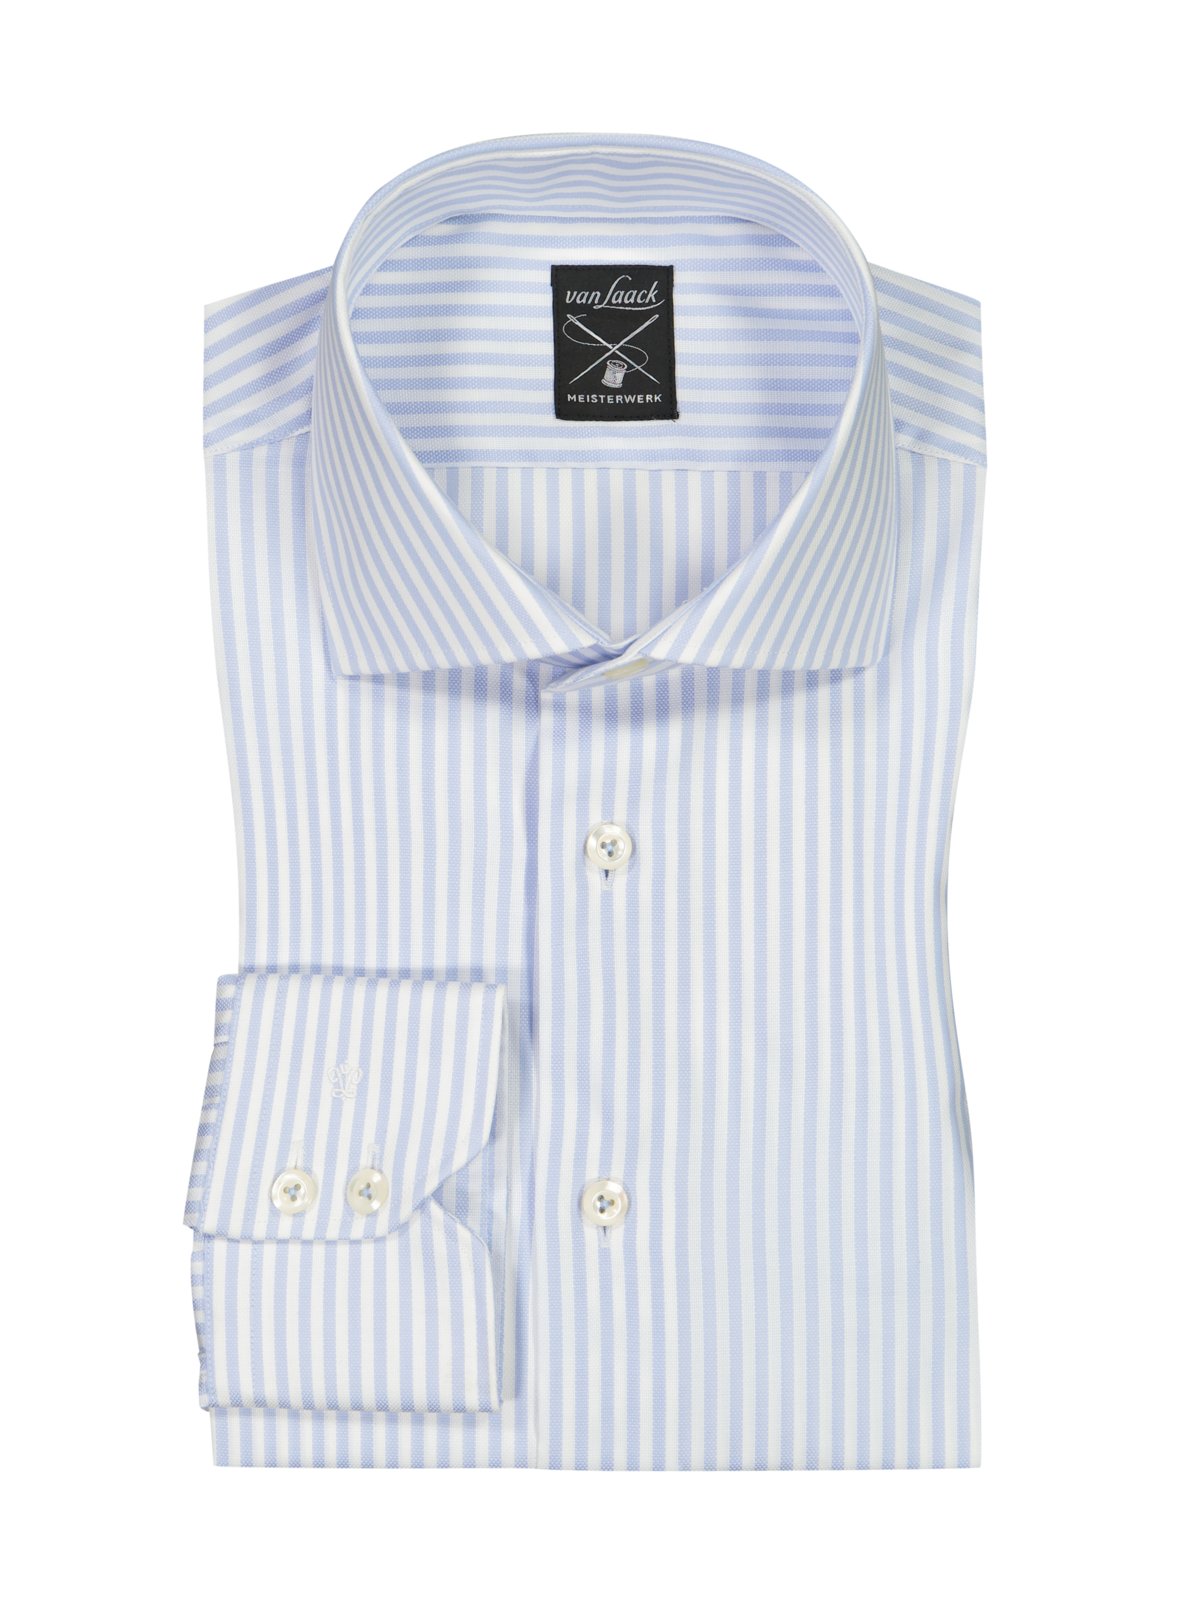 Van Laack Hemd aus Baumwolle mit Streifenmuster, Tailored Fit